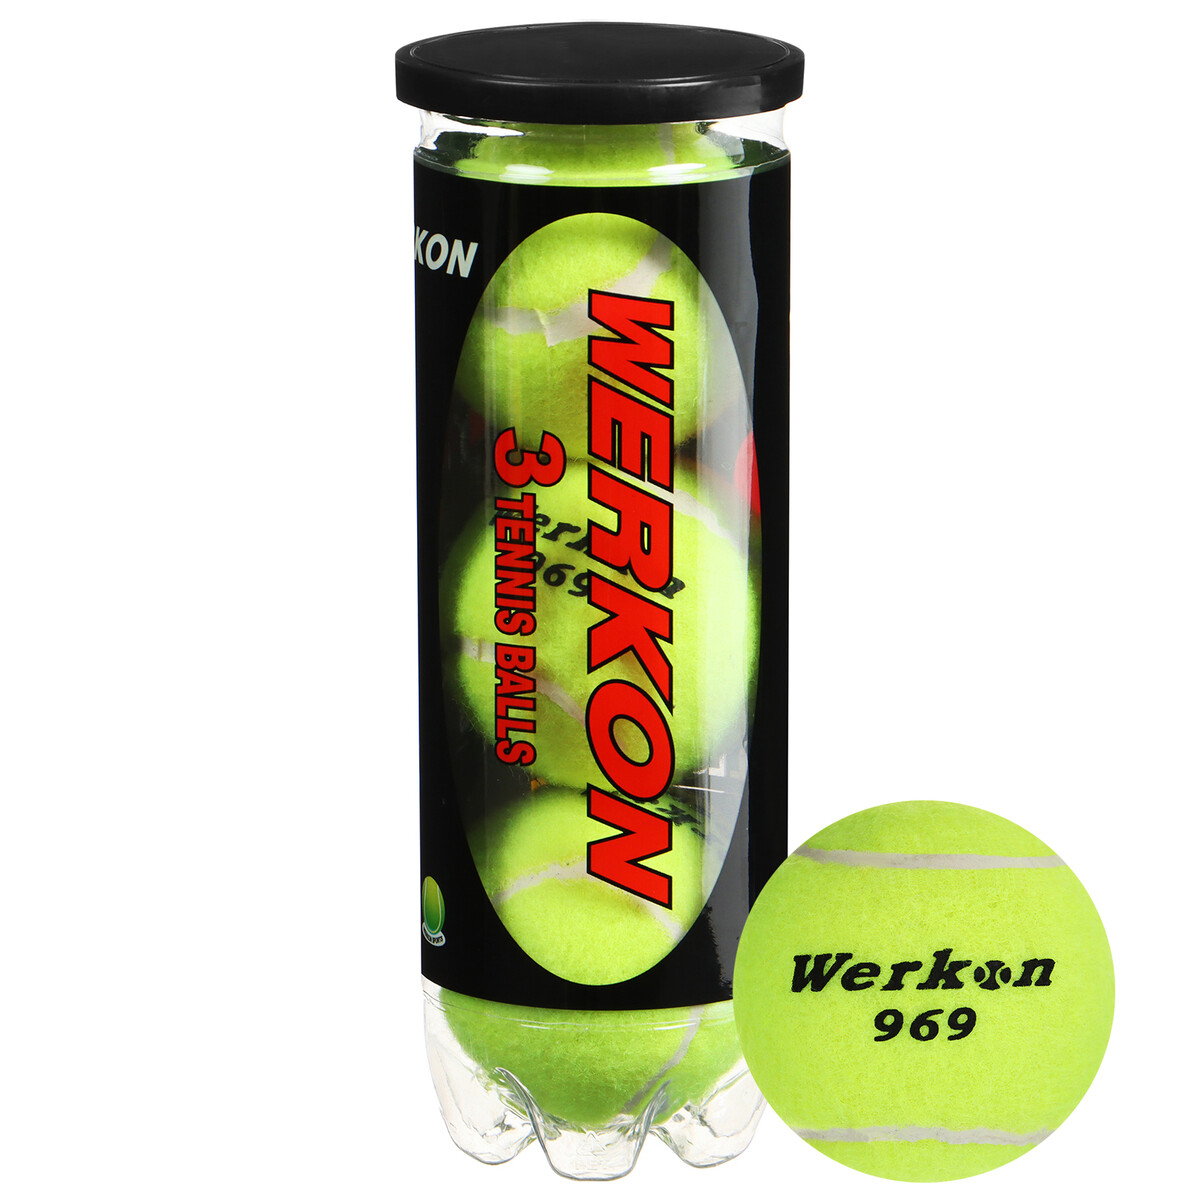 Набор мячей для большого тенниса werkon 969, с давлением, 3 шт. набор мячей для большого тенниса werkon 989 с давлением 3 шт